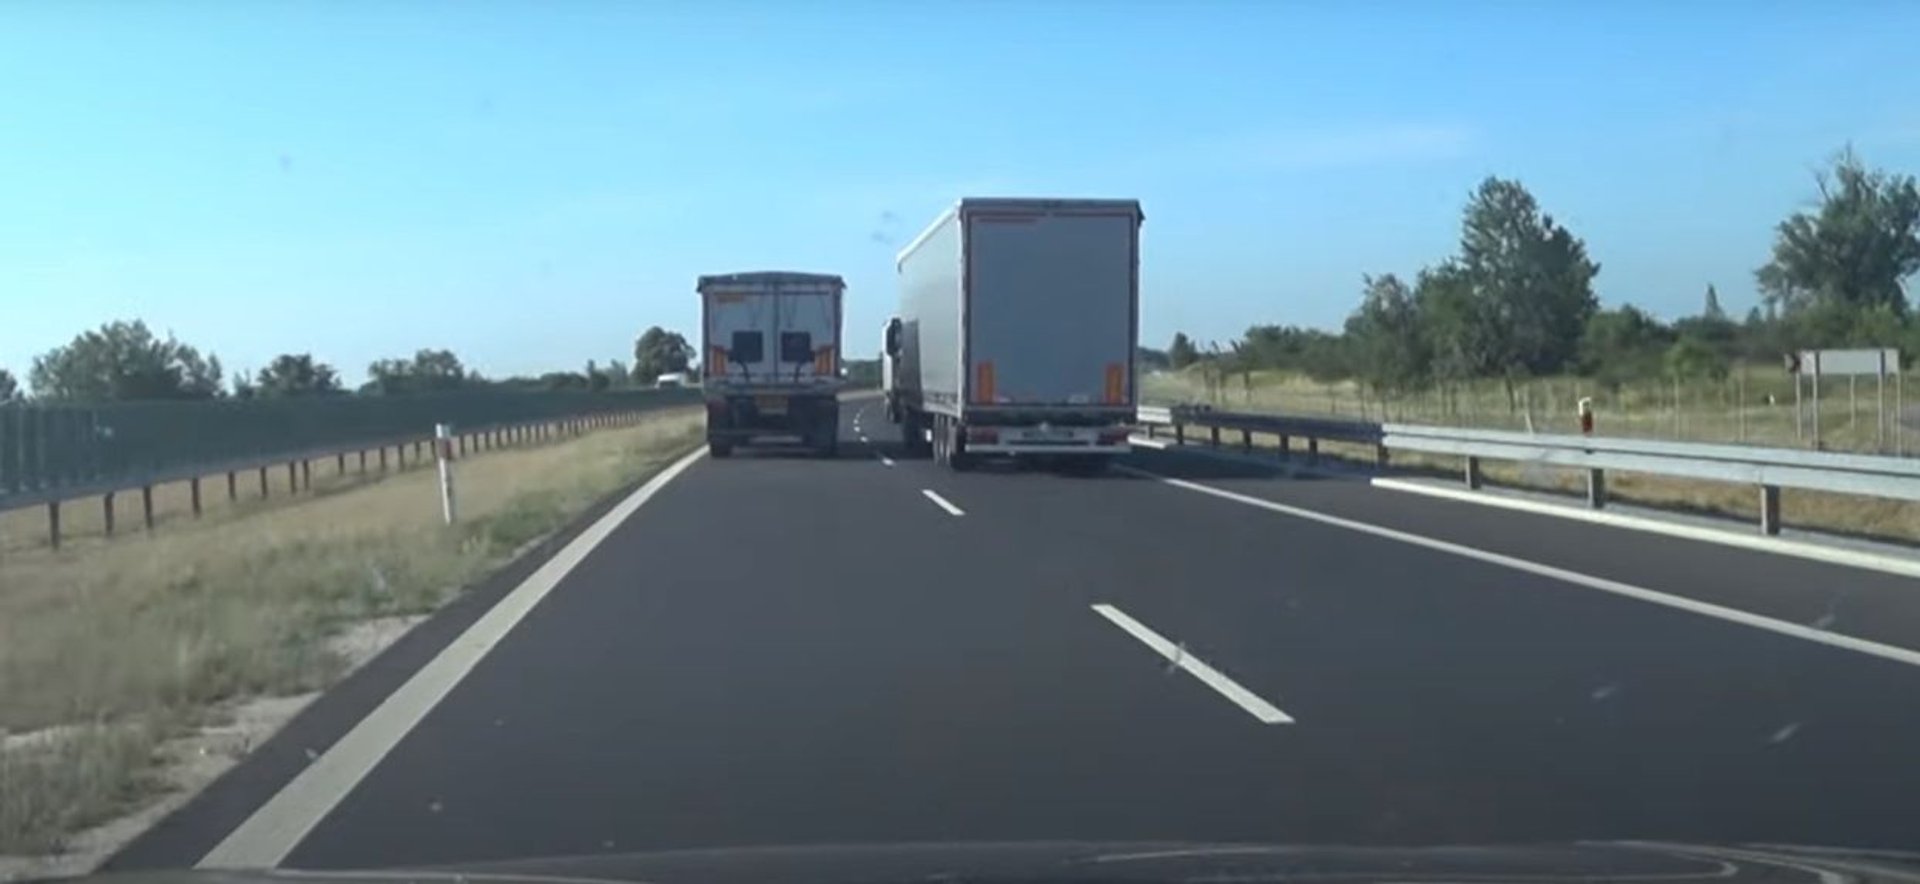 Samochód ciężarowy zakaz wyprzedzania ciężarówek